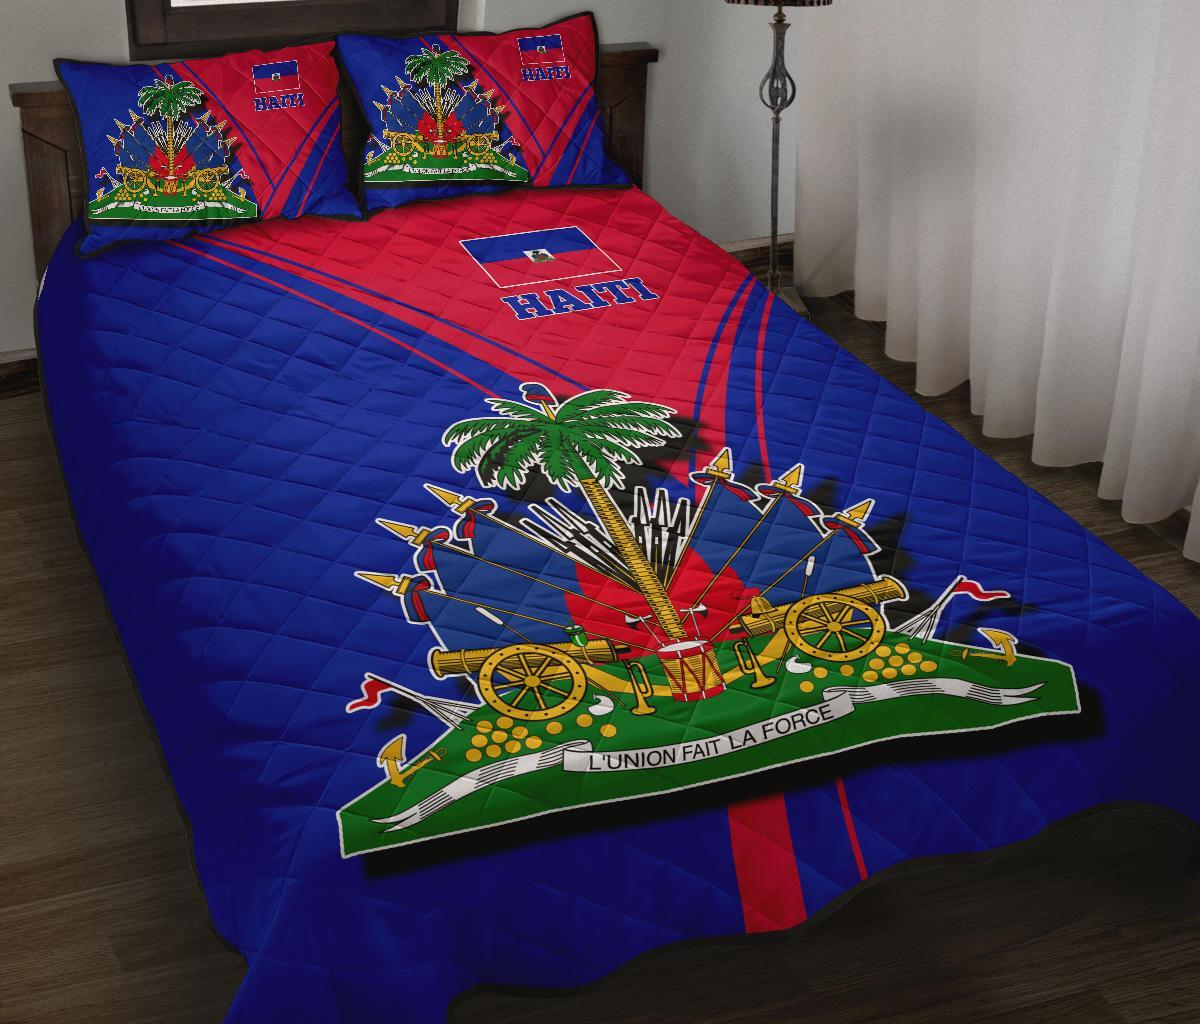 haiti-quilt-bed-set-haitian-pride